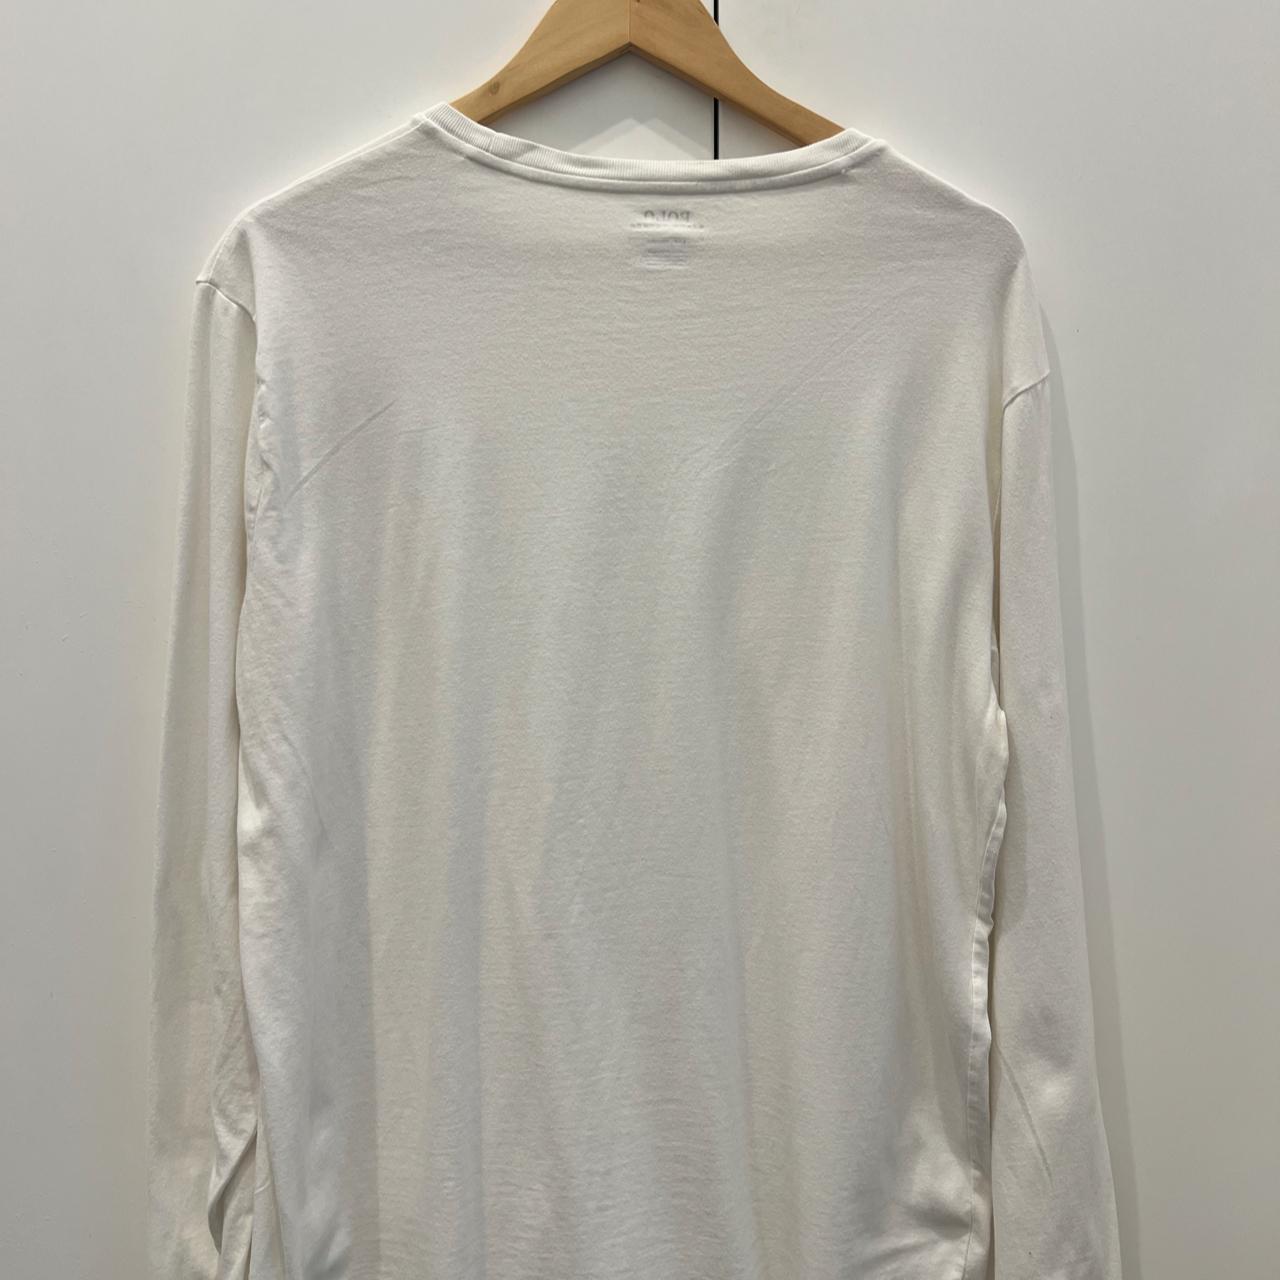 Polo Ralph Lauren long sleeve T-shirt, Size L, Worn... - Depop